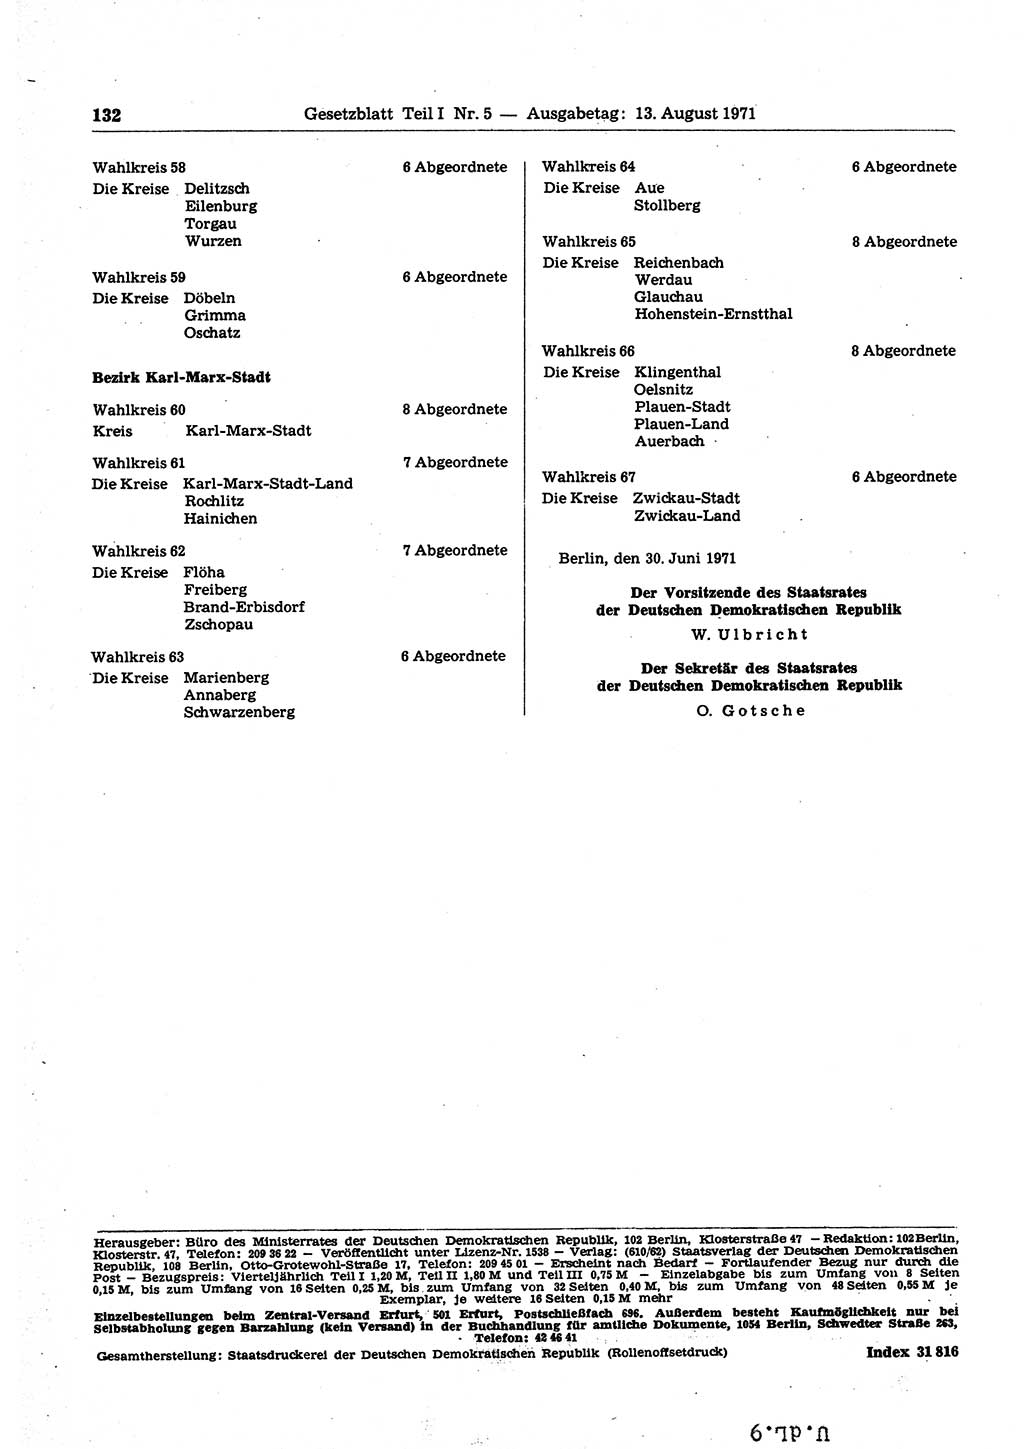 Gesetzblatt (GBl.) der Deutschen Demokratischen Republik (DDR) Teil Ⅰ 1971, Seite 132 (GBl. DDR Ⅰ 1971, S. 132)